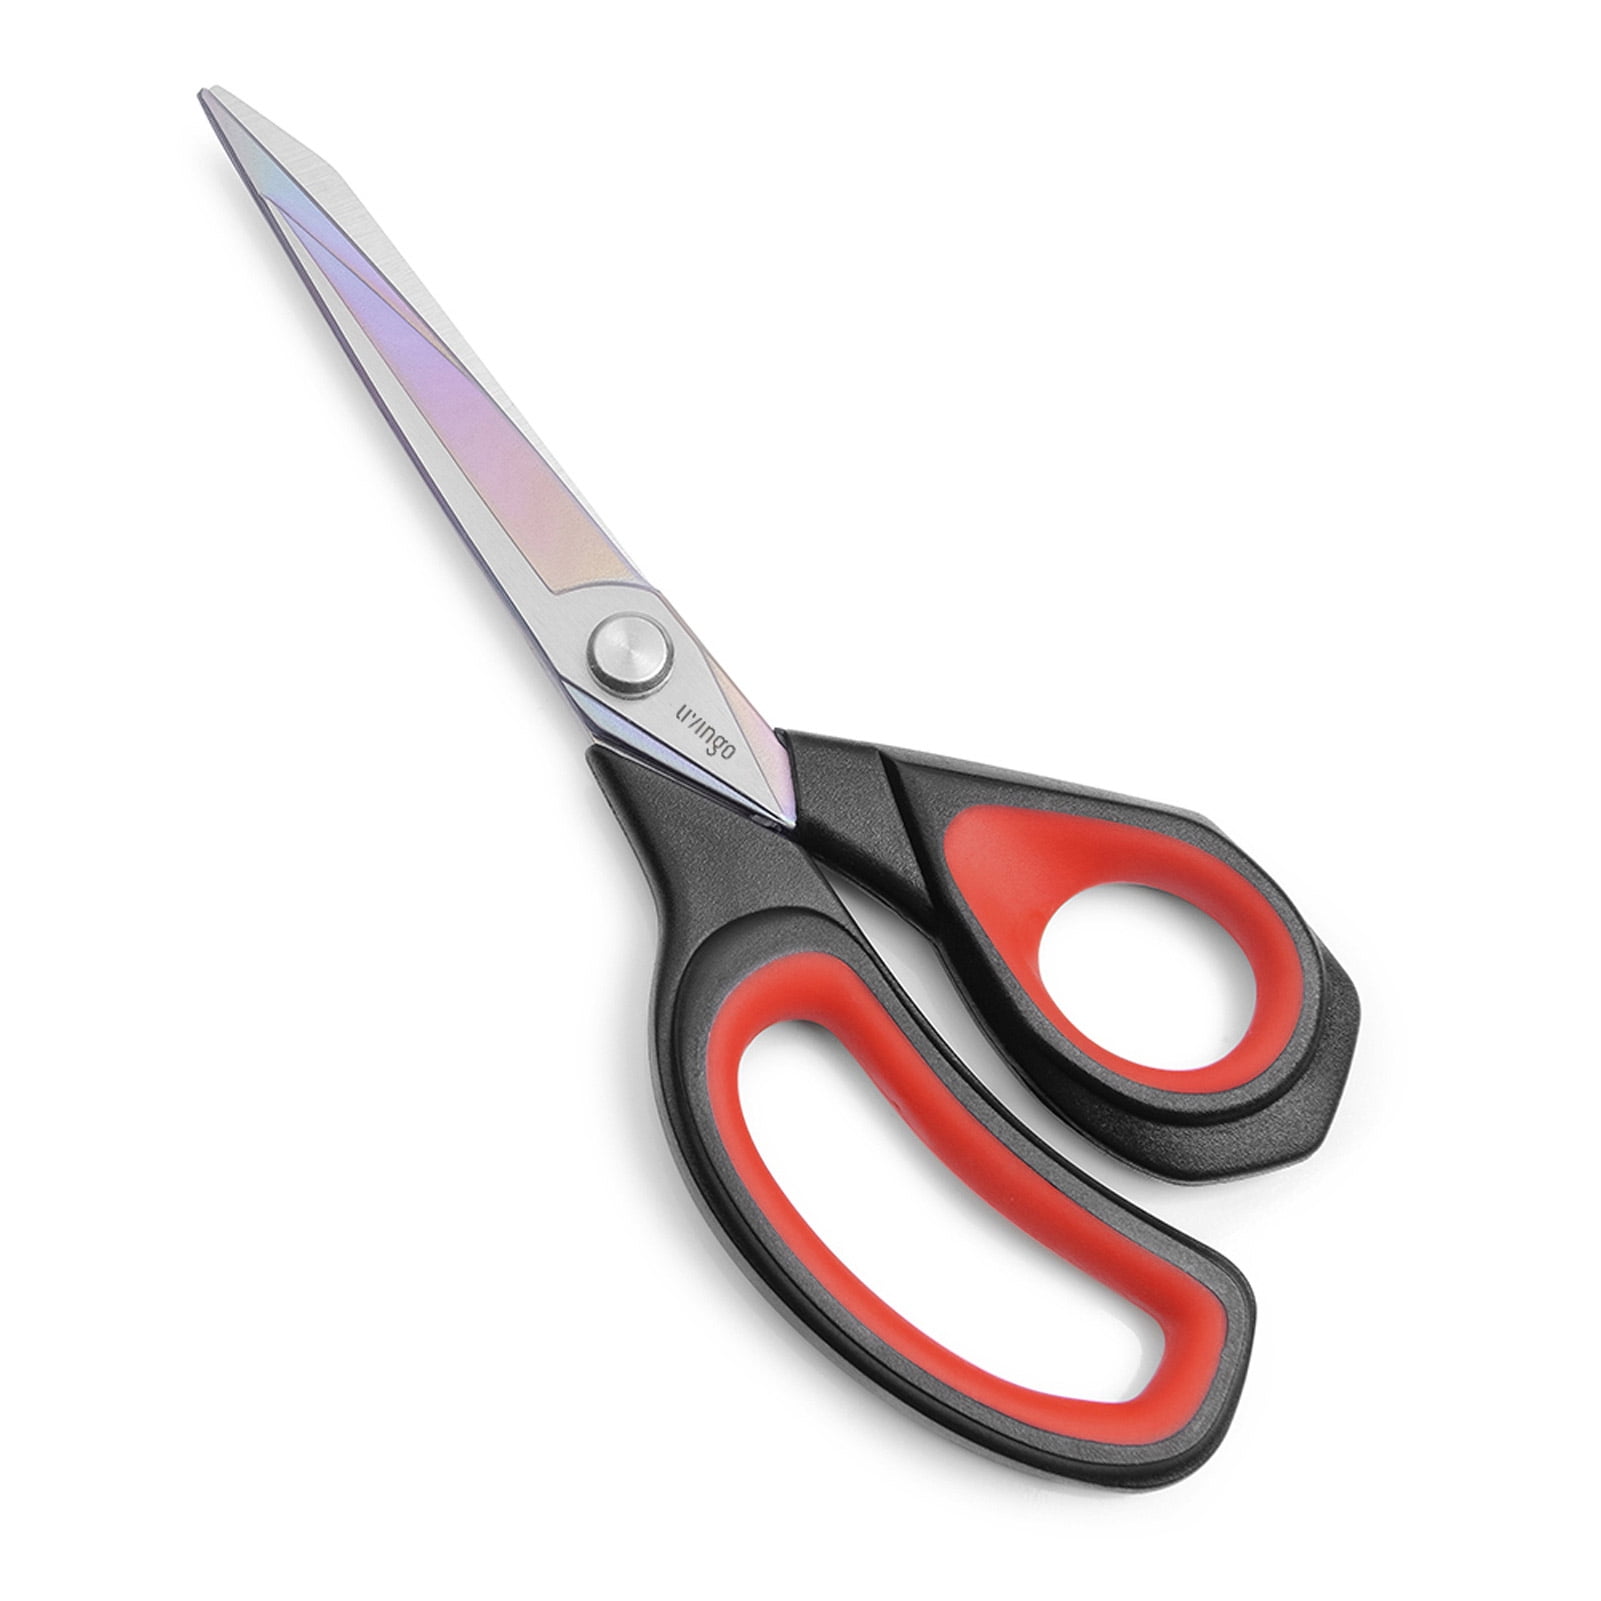 Westcott 9.5 Premium Tailor Scissors, Red/Black (17780)